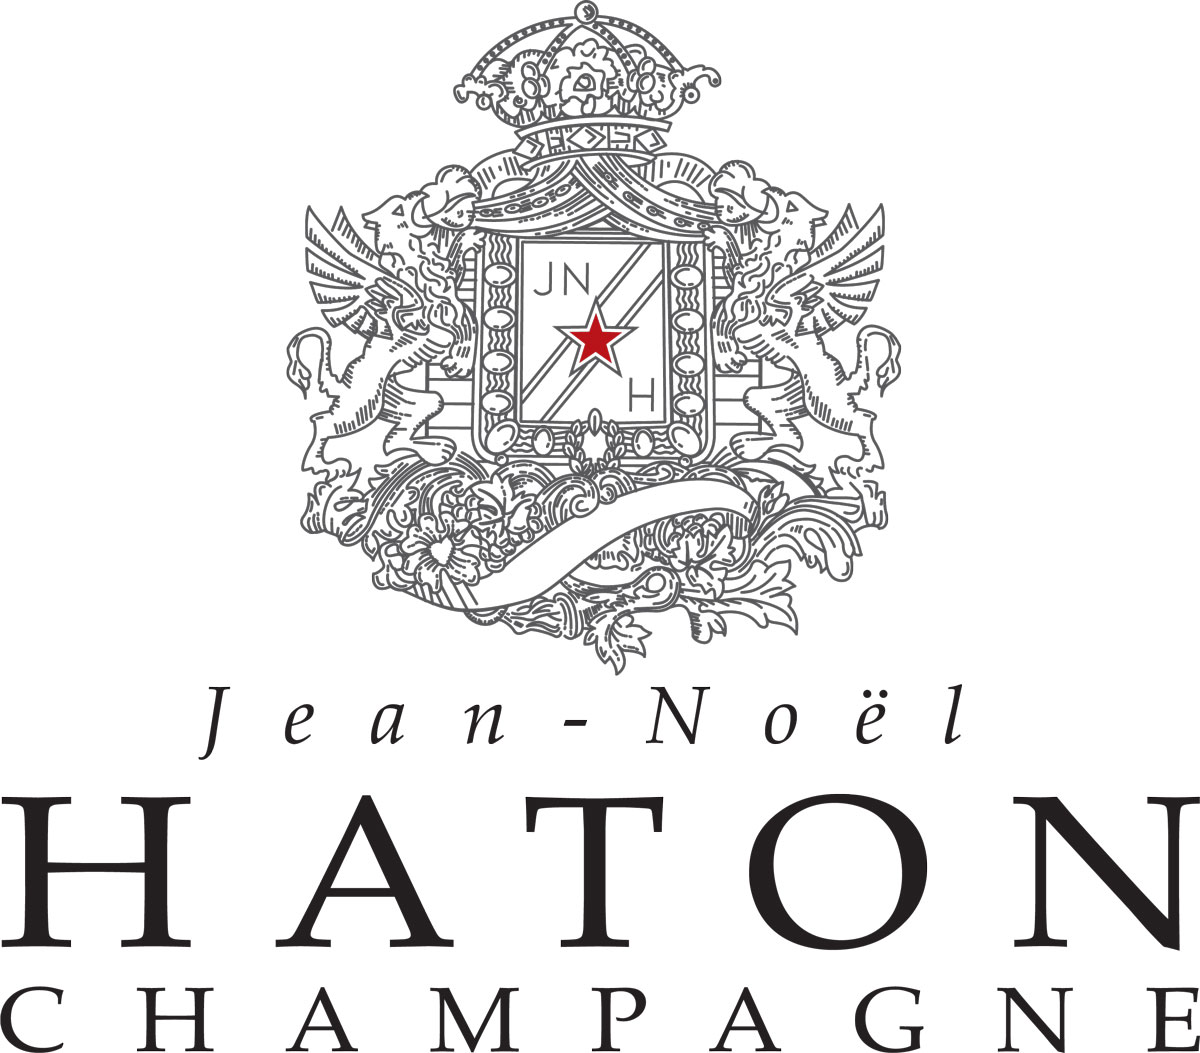 Champagne Jean-Noël Haton